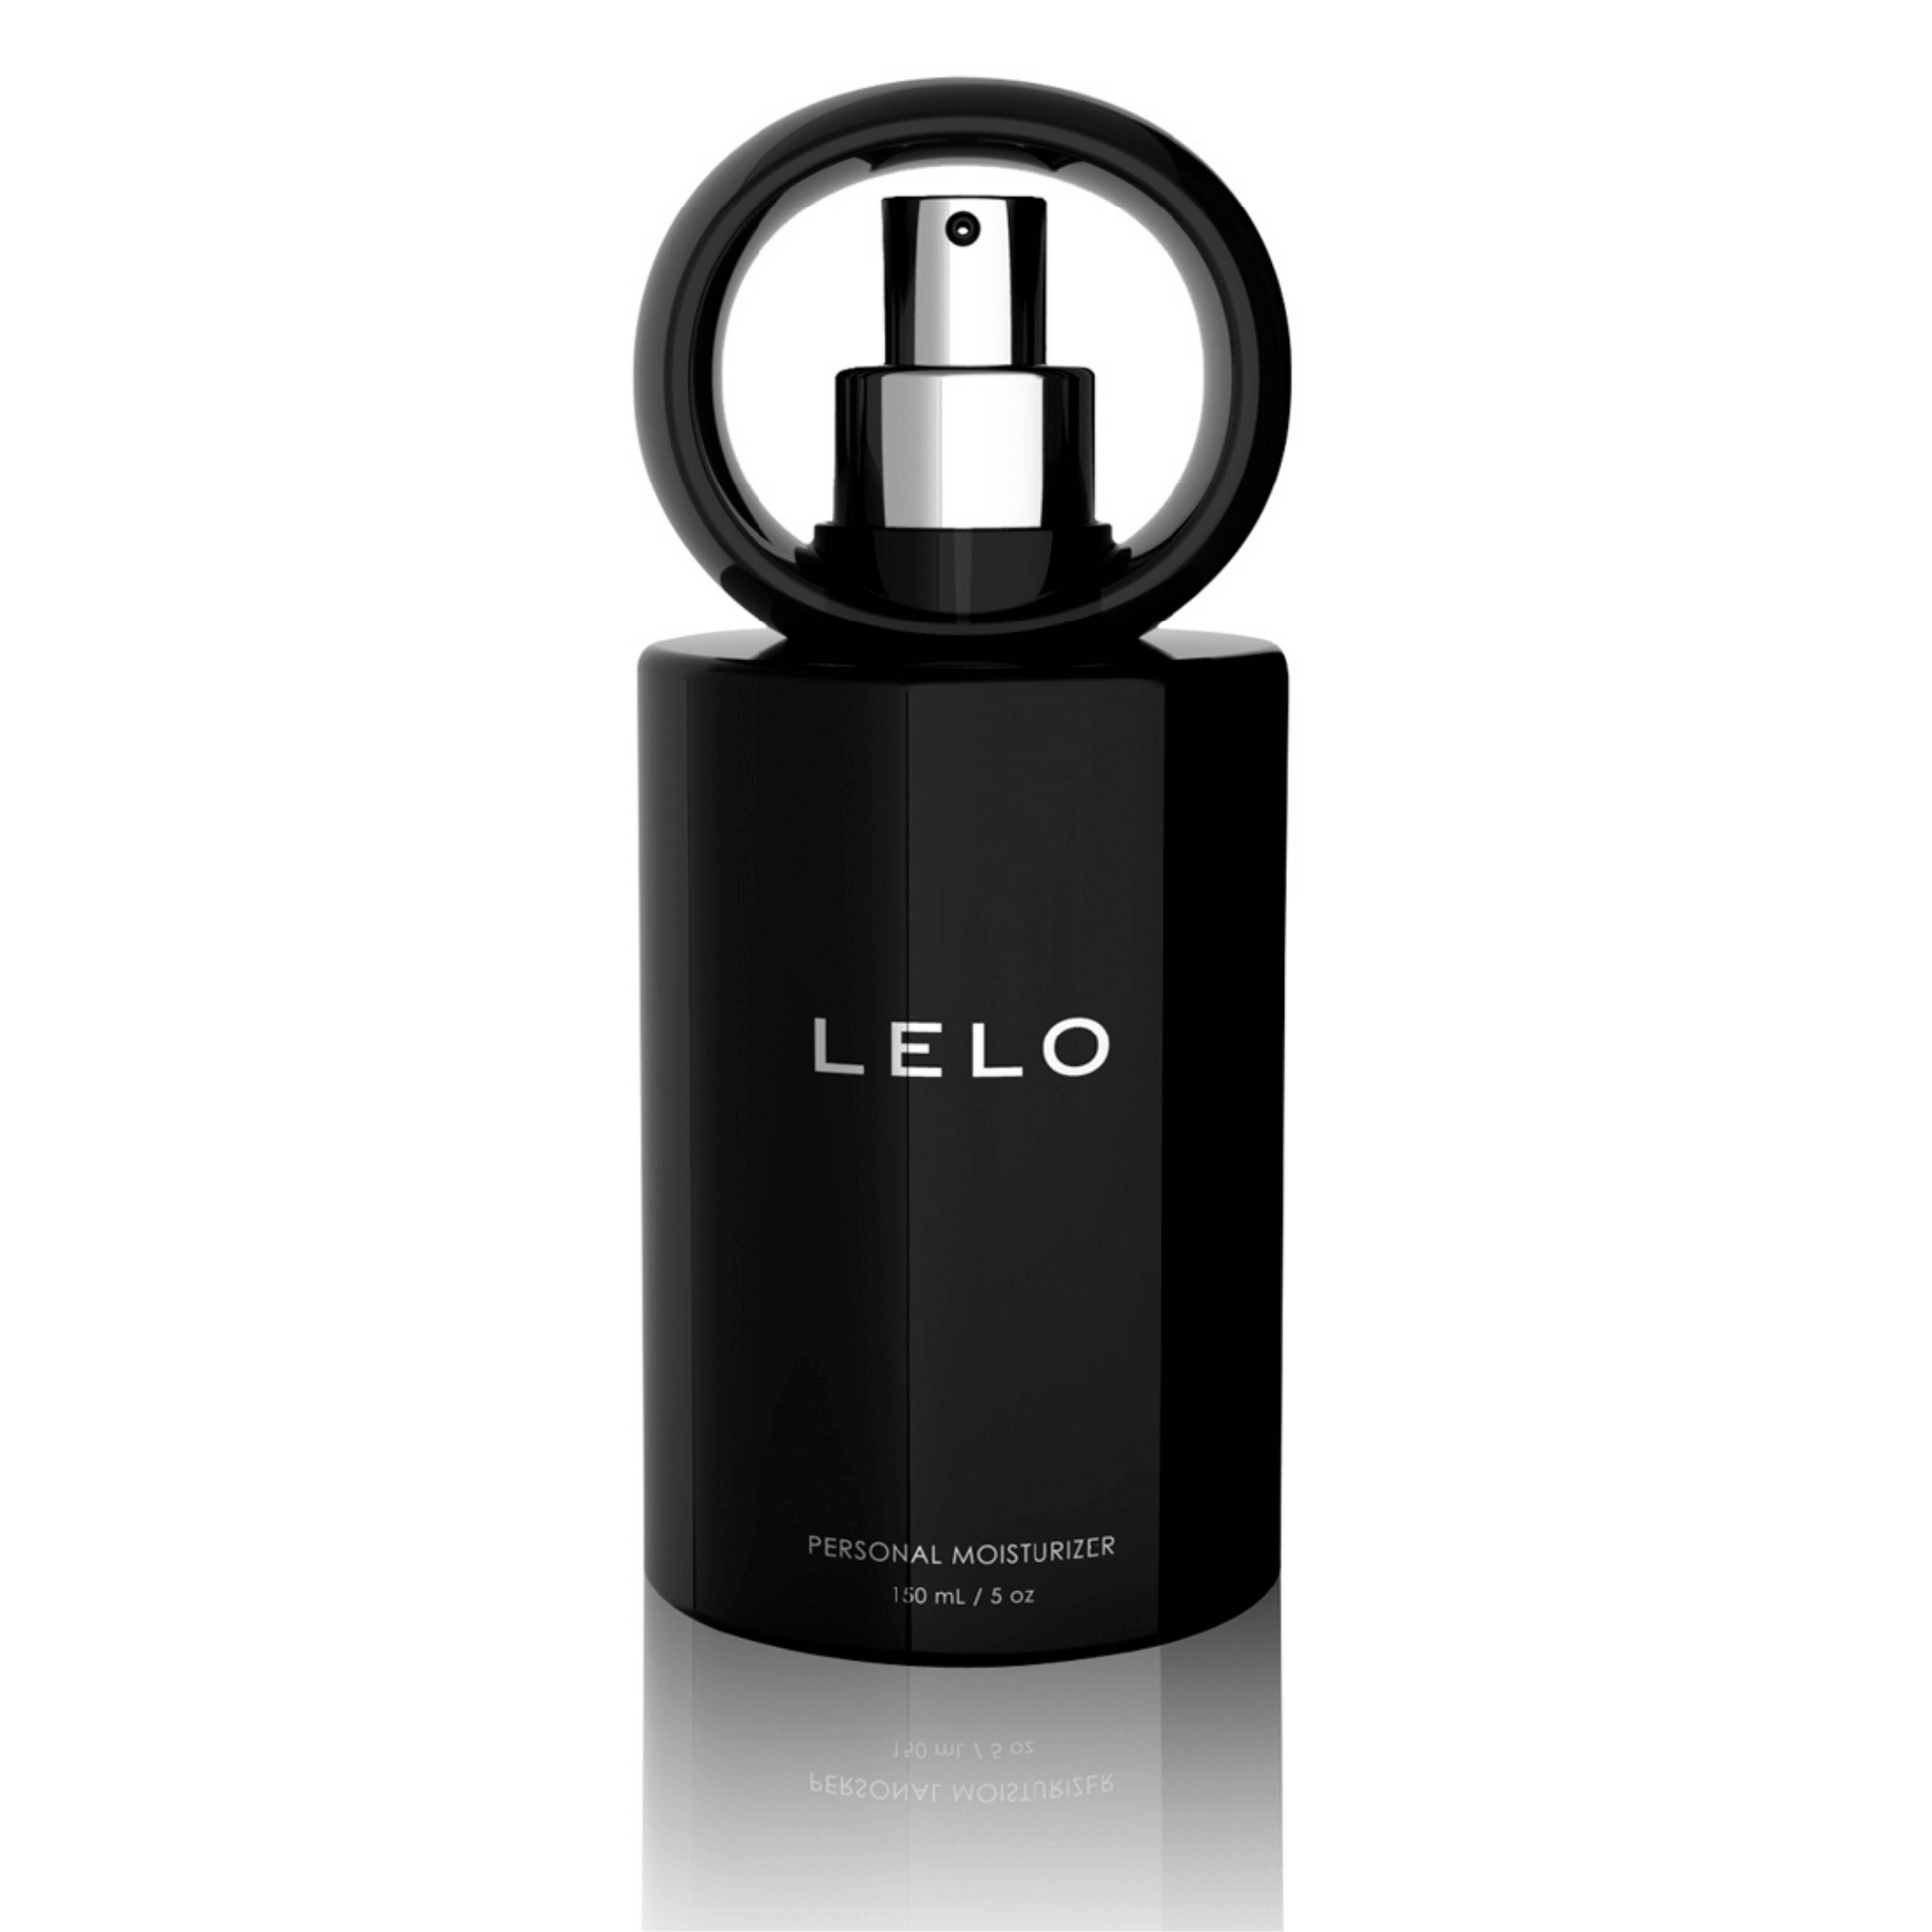 Lubrifiant personnel LELO 150ml en flacon noir sophistiqué avec pompe pratique, assurez confort et plaisir avec Oh My God'Z